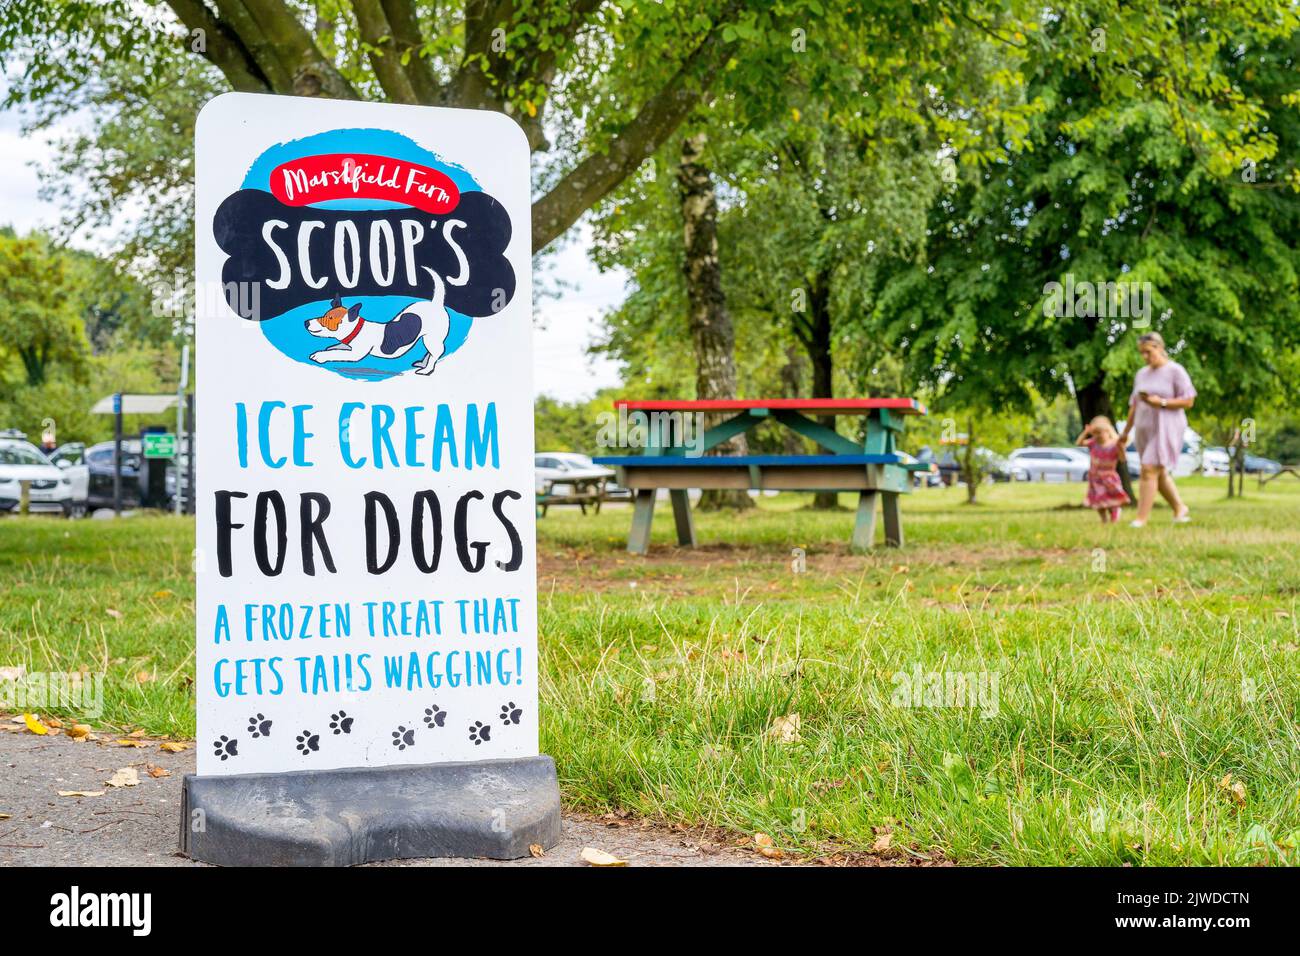 Gros plan du panneau dans le parc public britannique vendant la glace Scoop's spécialement conçue pour les chiens ! Banque D'Images